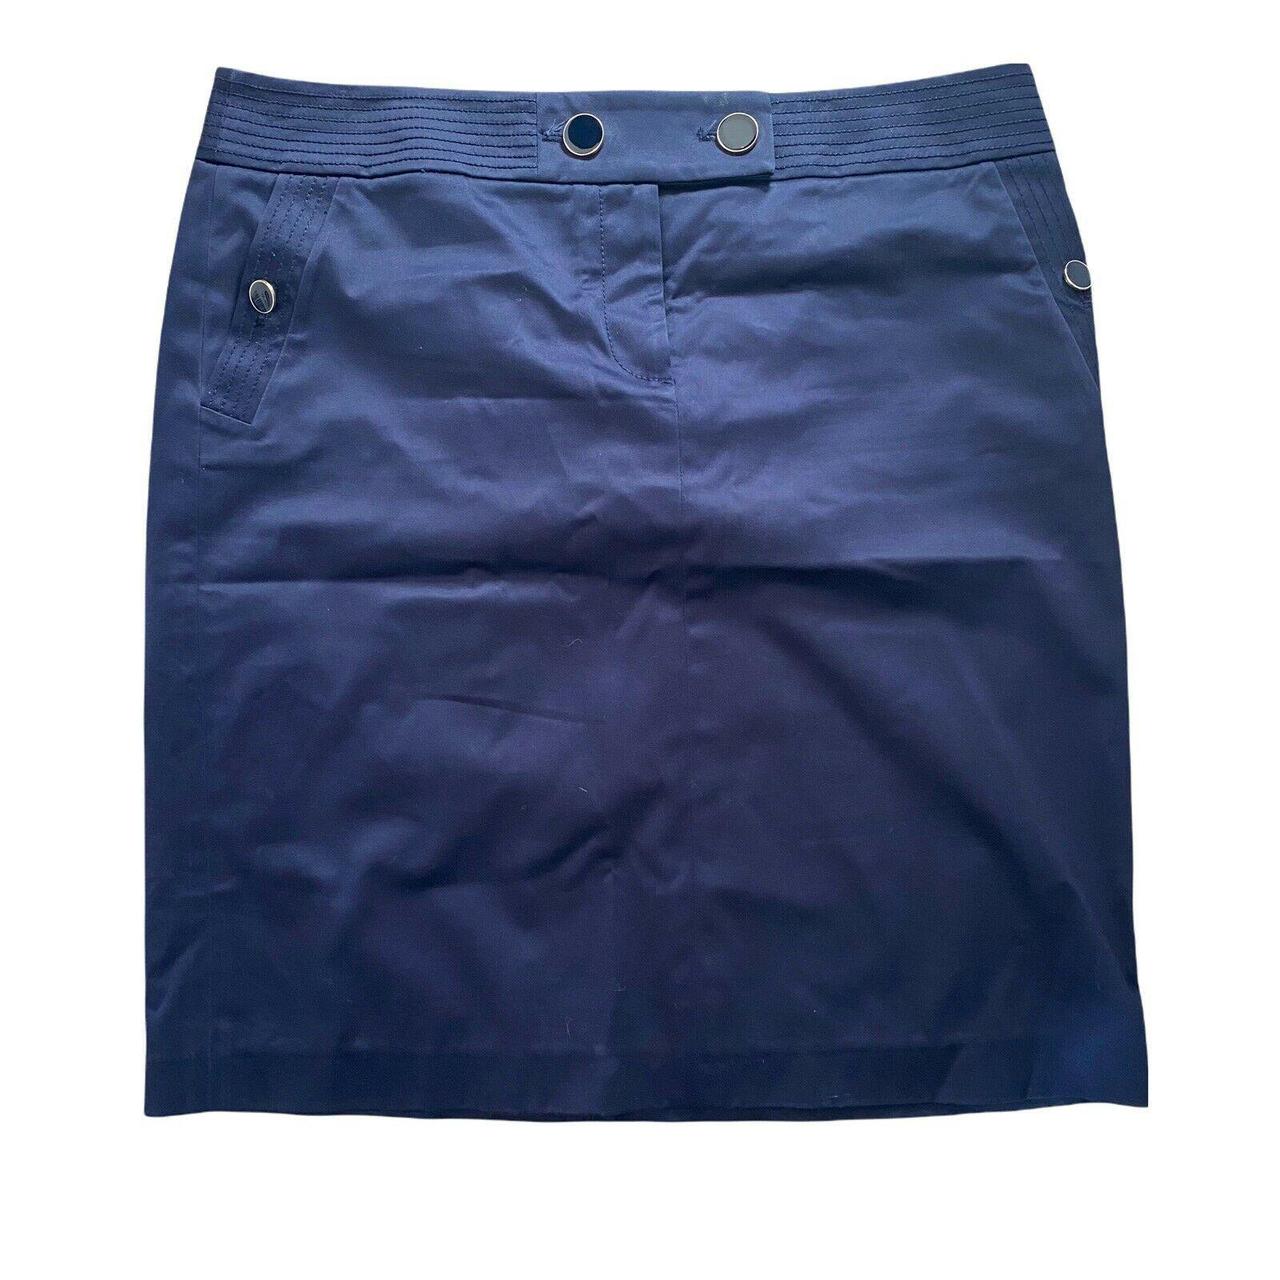 navy cotton skirt uk